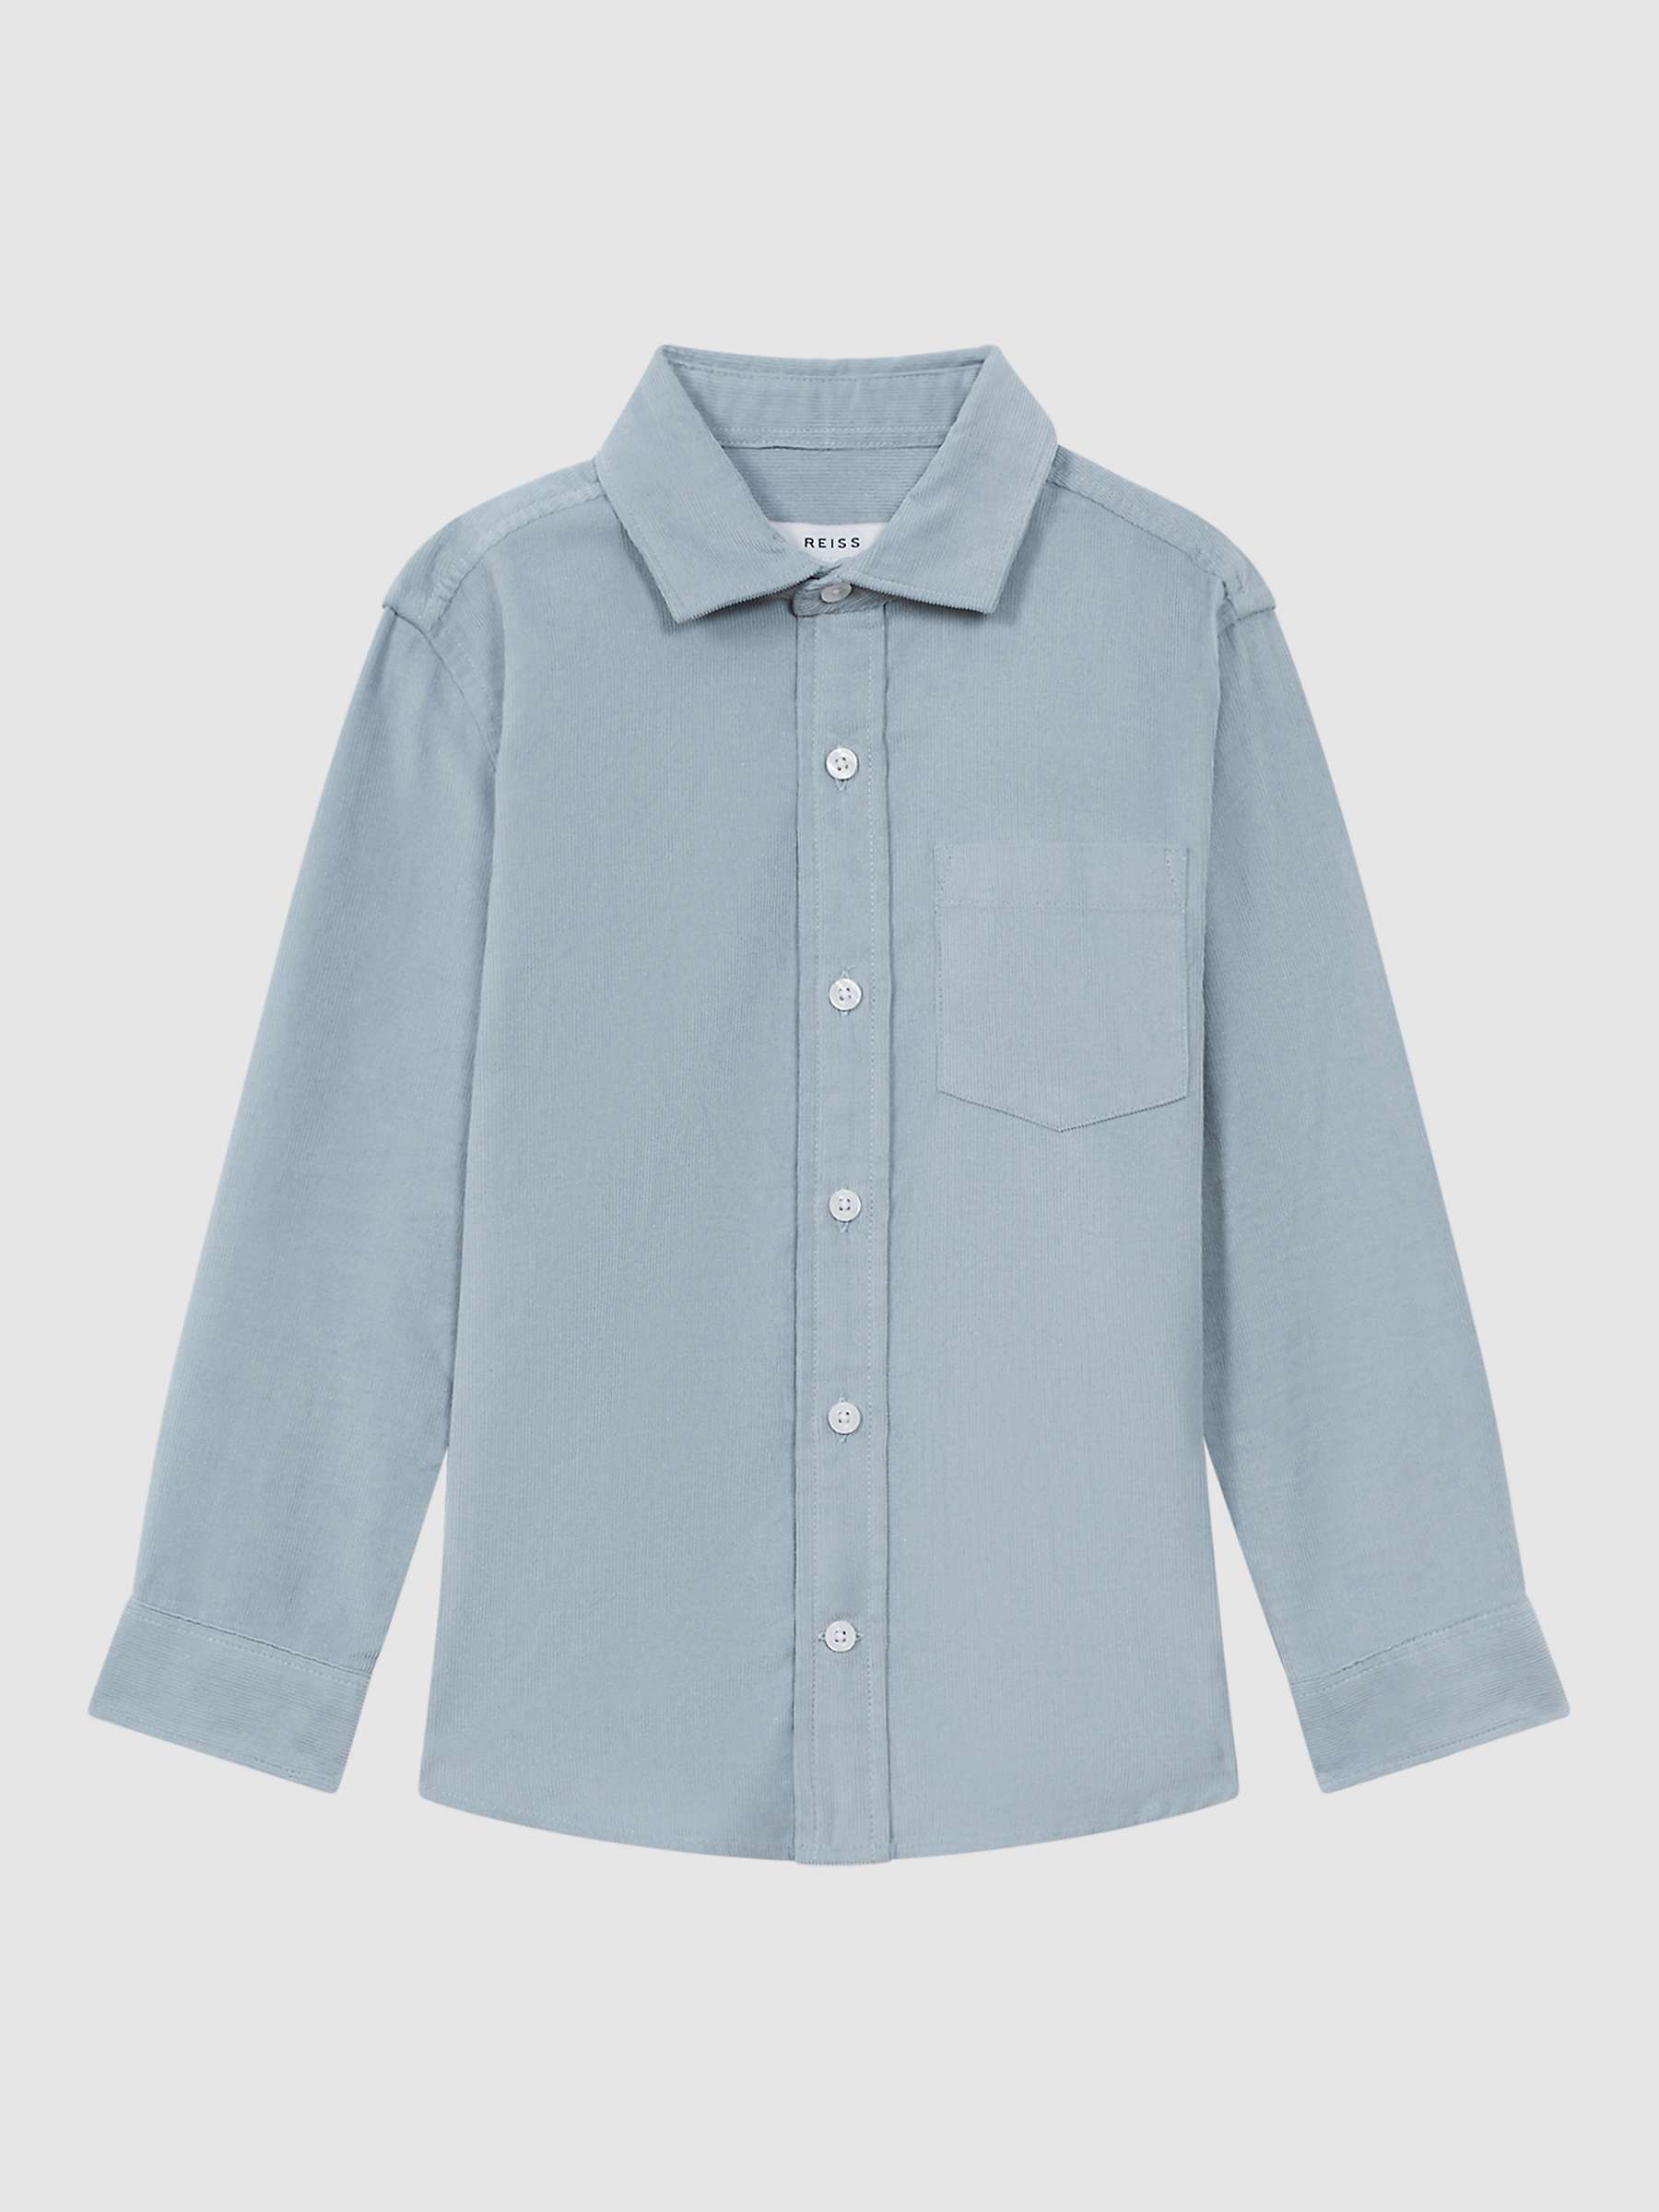 Buy Reiss Kids' Albion Cut Away Collar Shirt, Soft Blue Online at johnlewis.com